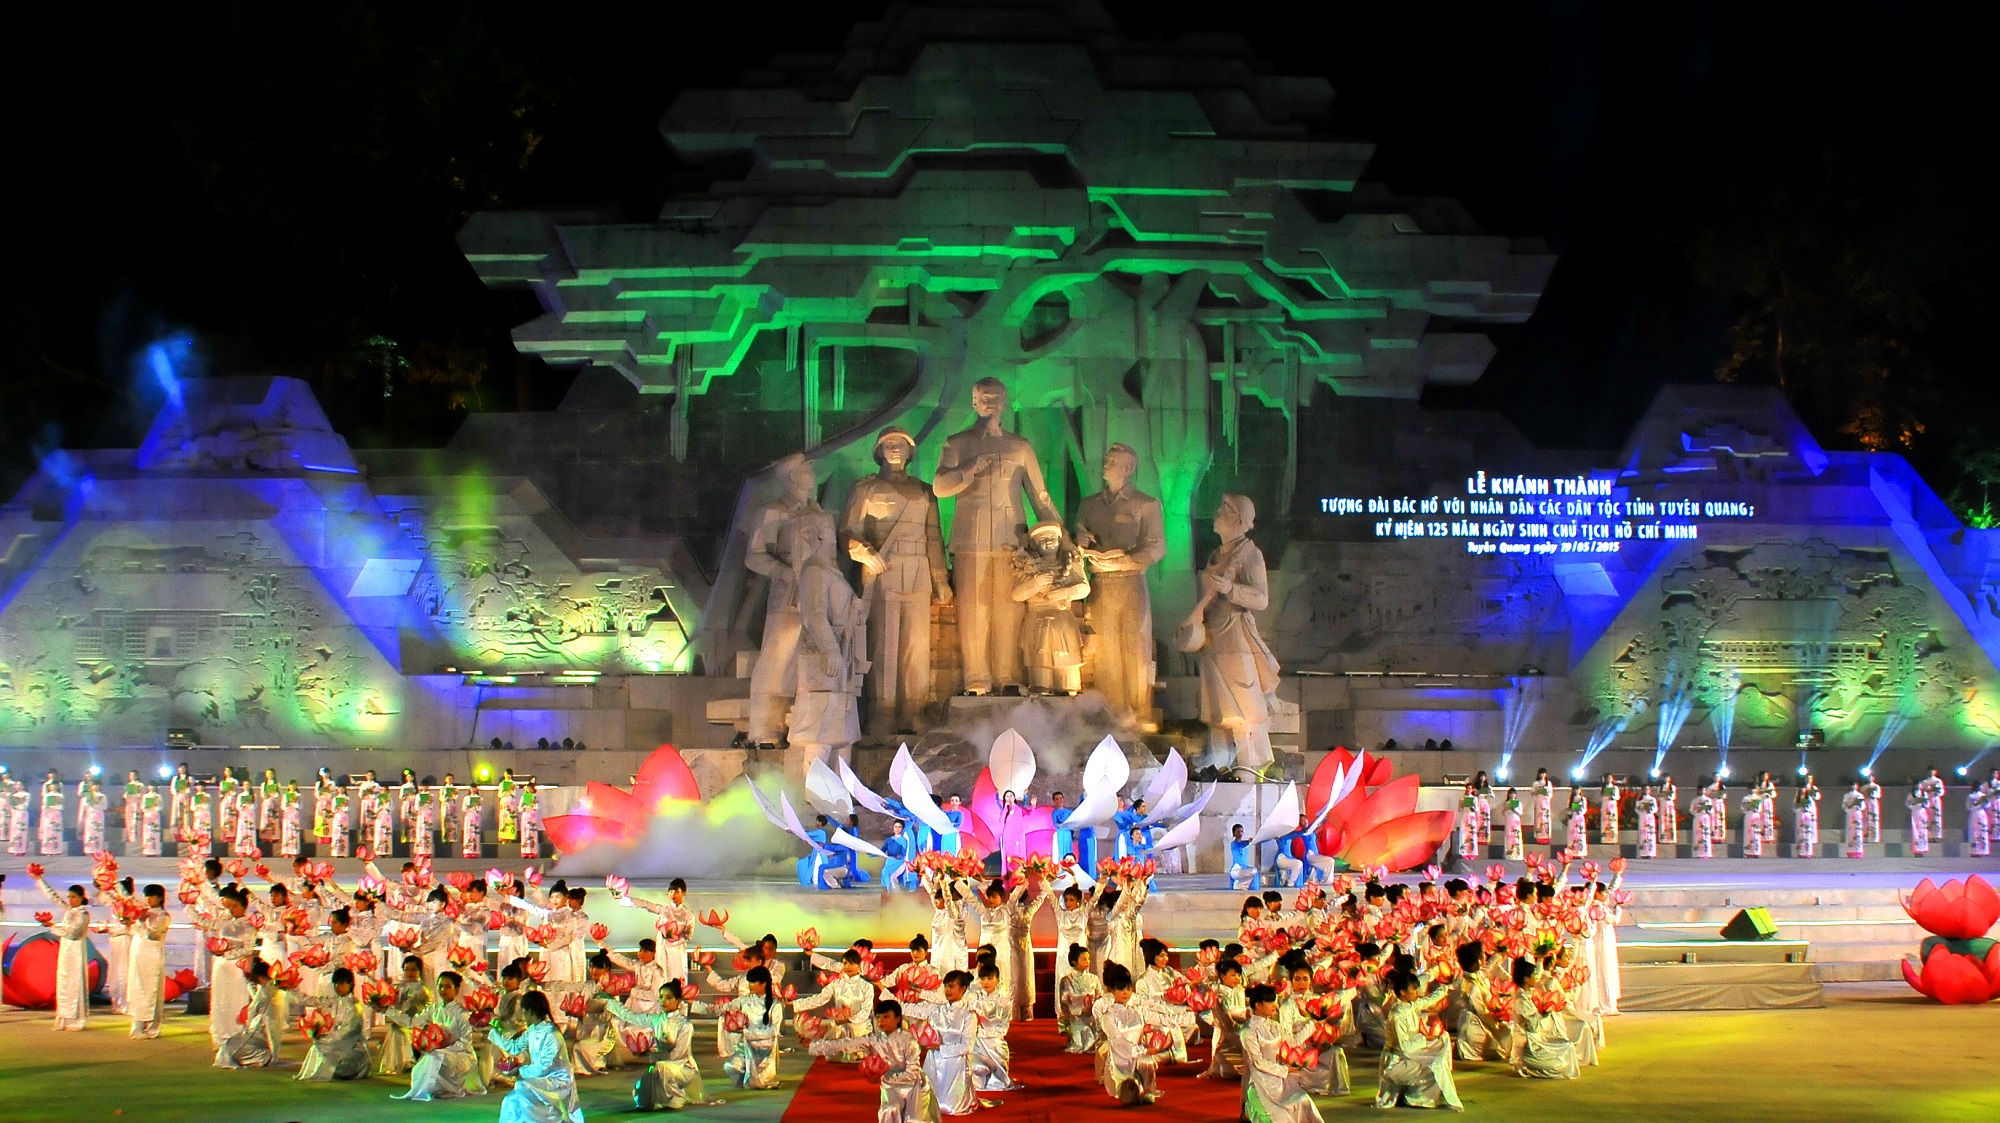 Khánh thành Tượng đài "Bác Hồ với nhân dân các dân tộc tỉnh Tuyên Quang" - Tác giả: Nhà báo Đinh Công Thuỷ - ảnh 2